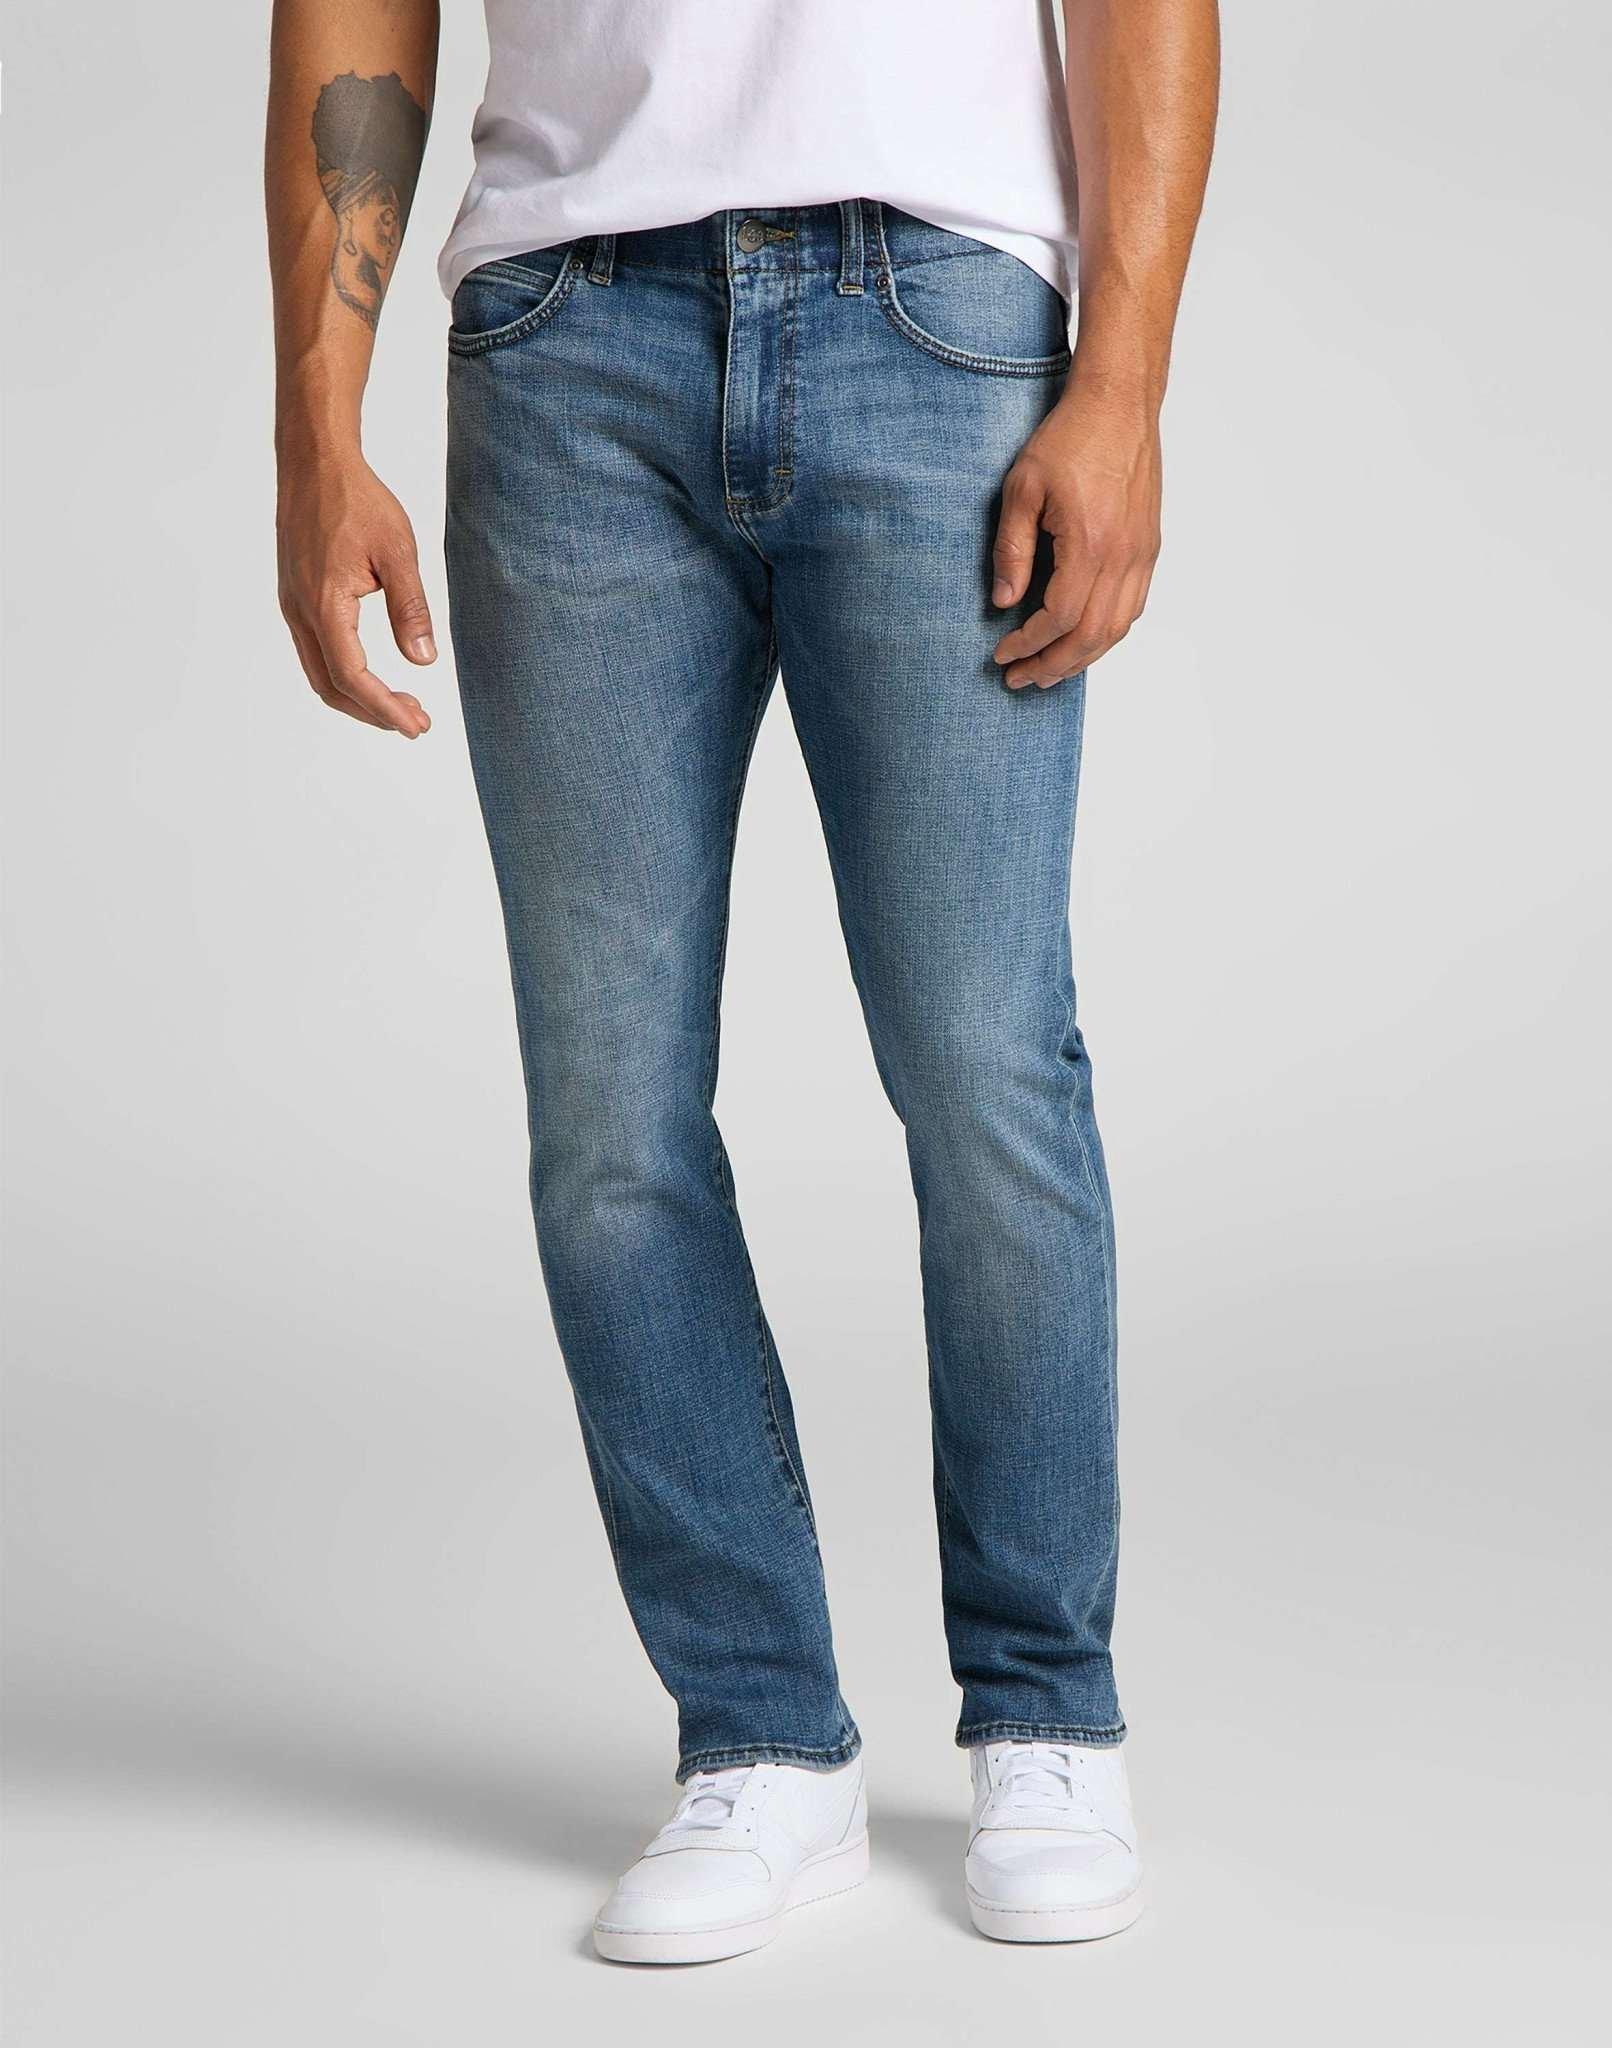 Jeans Slim Fit Mvp Herren Blau Denim L34/W38 von Lee